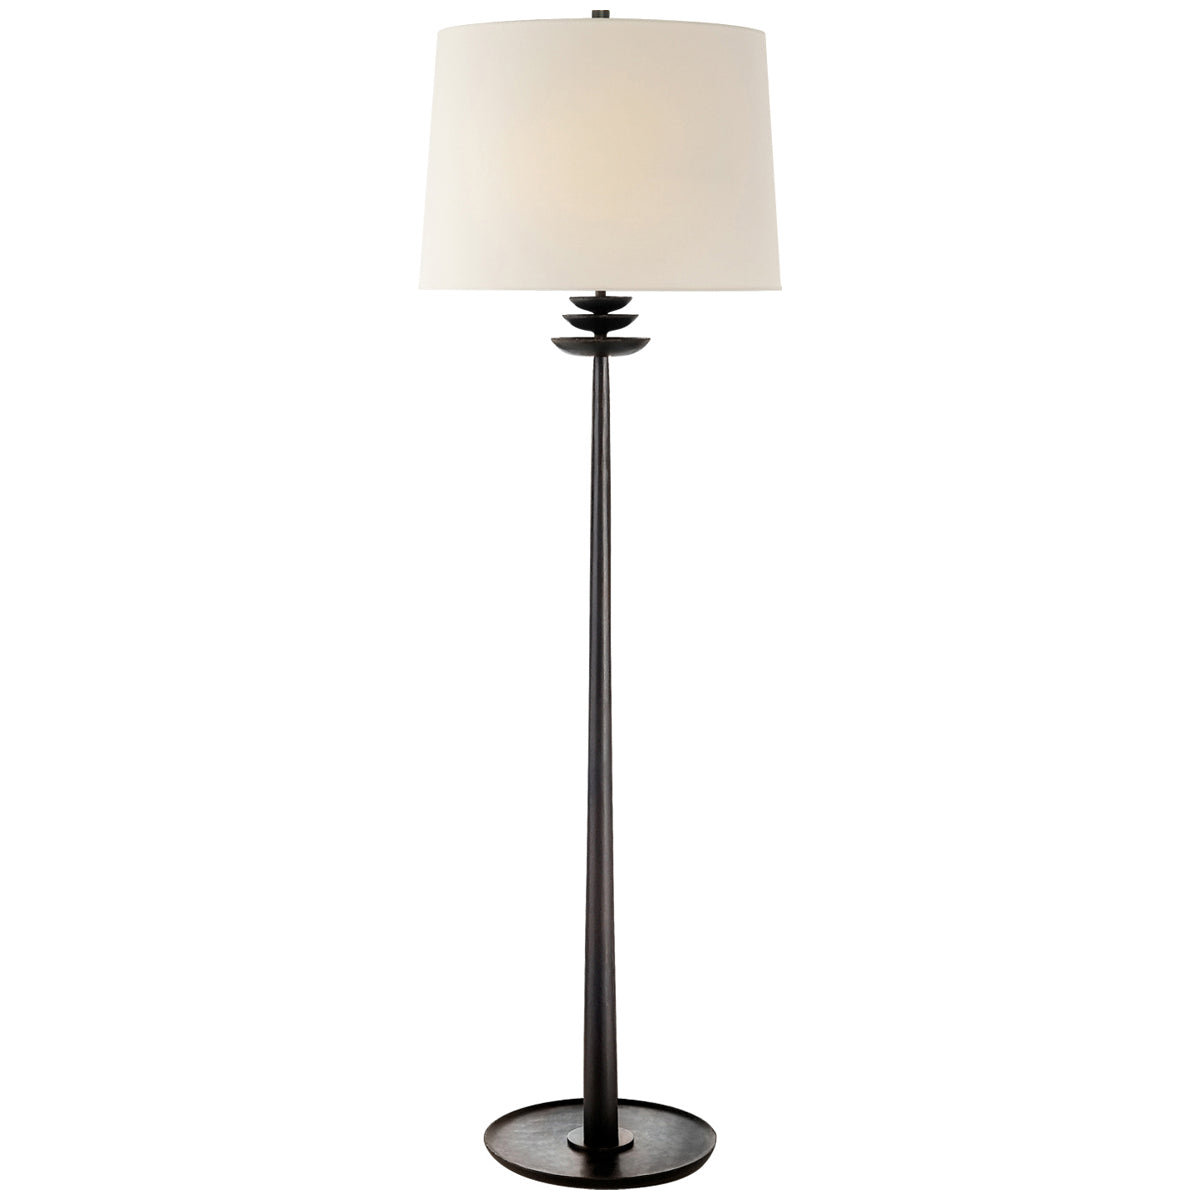 Visual Comfort Beaumont Floor Lamp